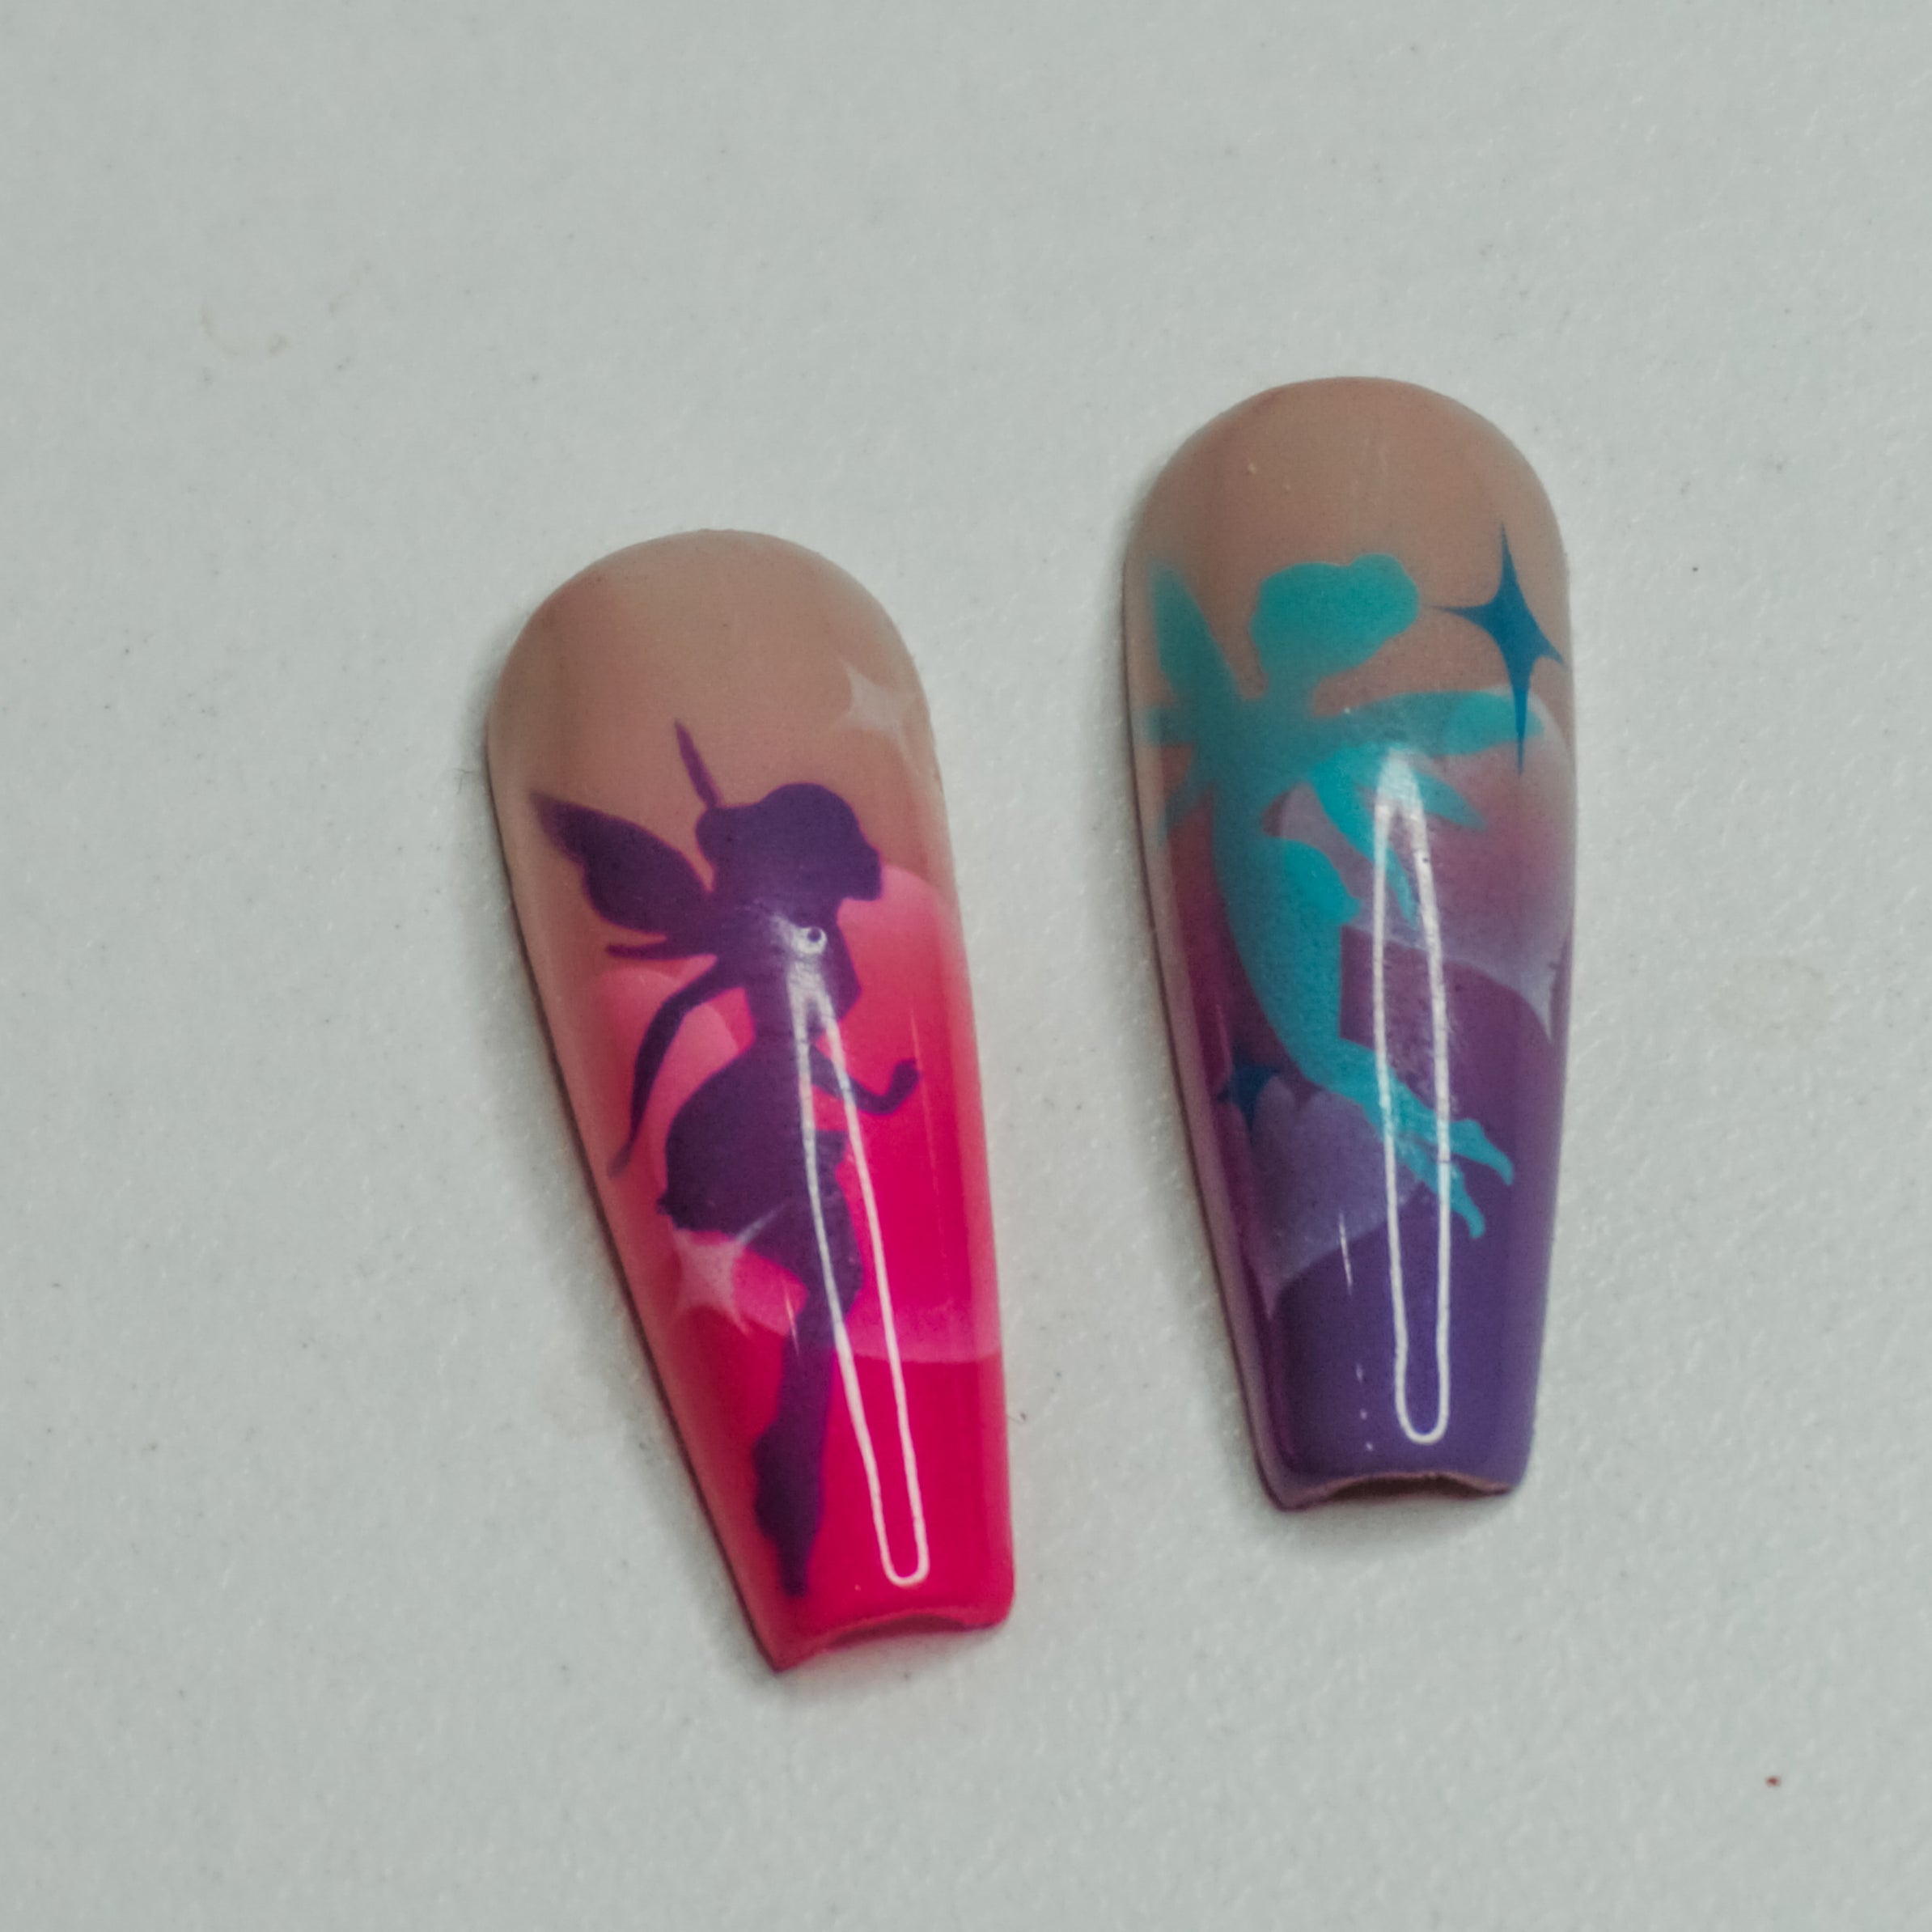 8 Fairy Airbrush Nail Art Stencils – Glam Goodies